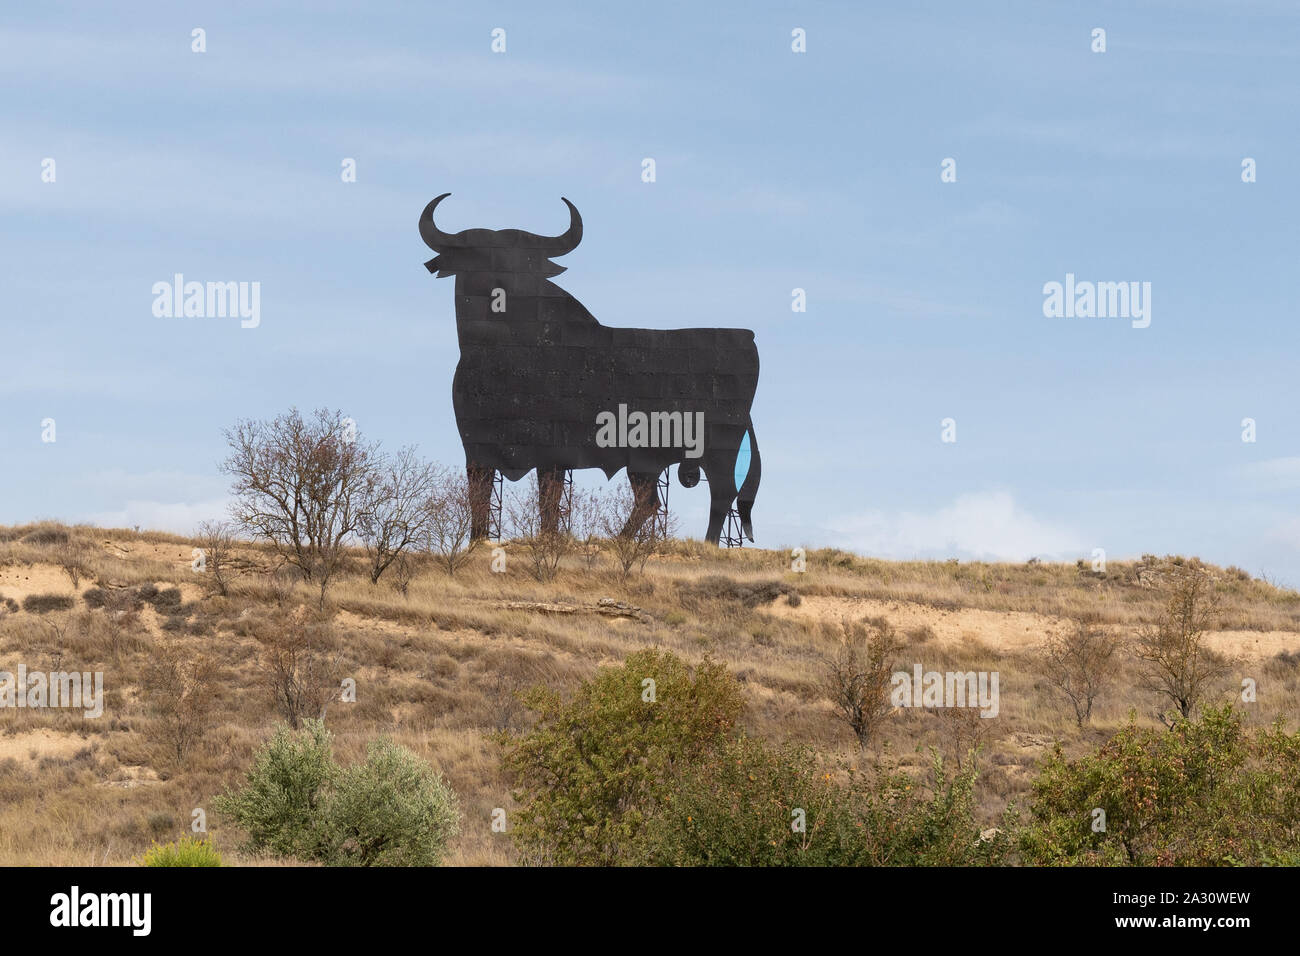 Osborne Stier Zeichen - Eine schwarze Silhouette Bild von einem Stier durch die Seiten von Straßen in Spanien gesehen - dieses ist in La Rioja neben der N-232 Stockfoto